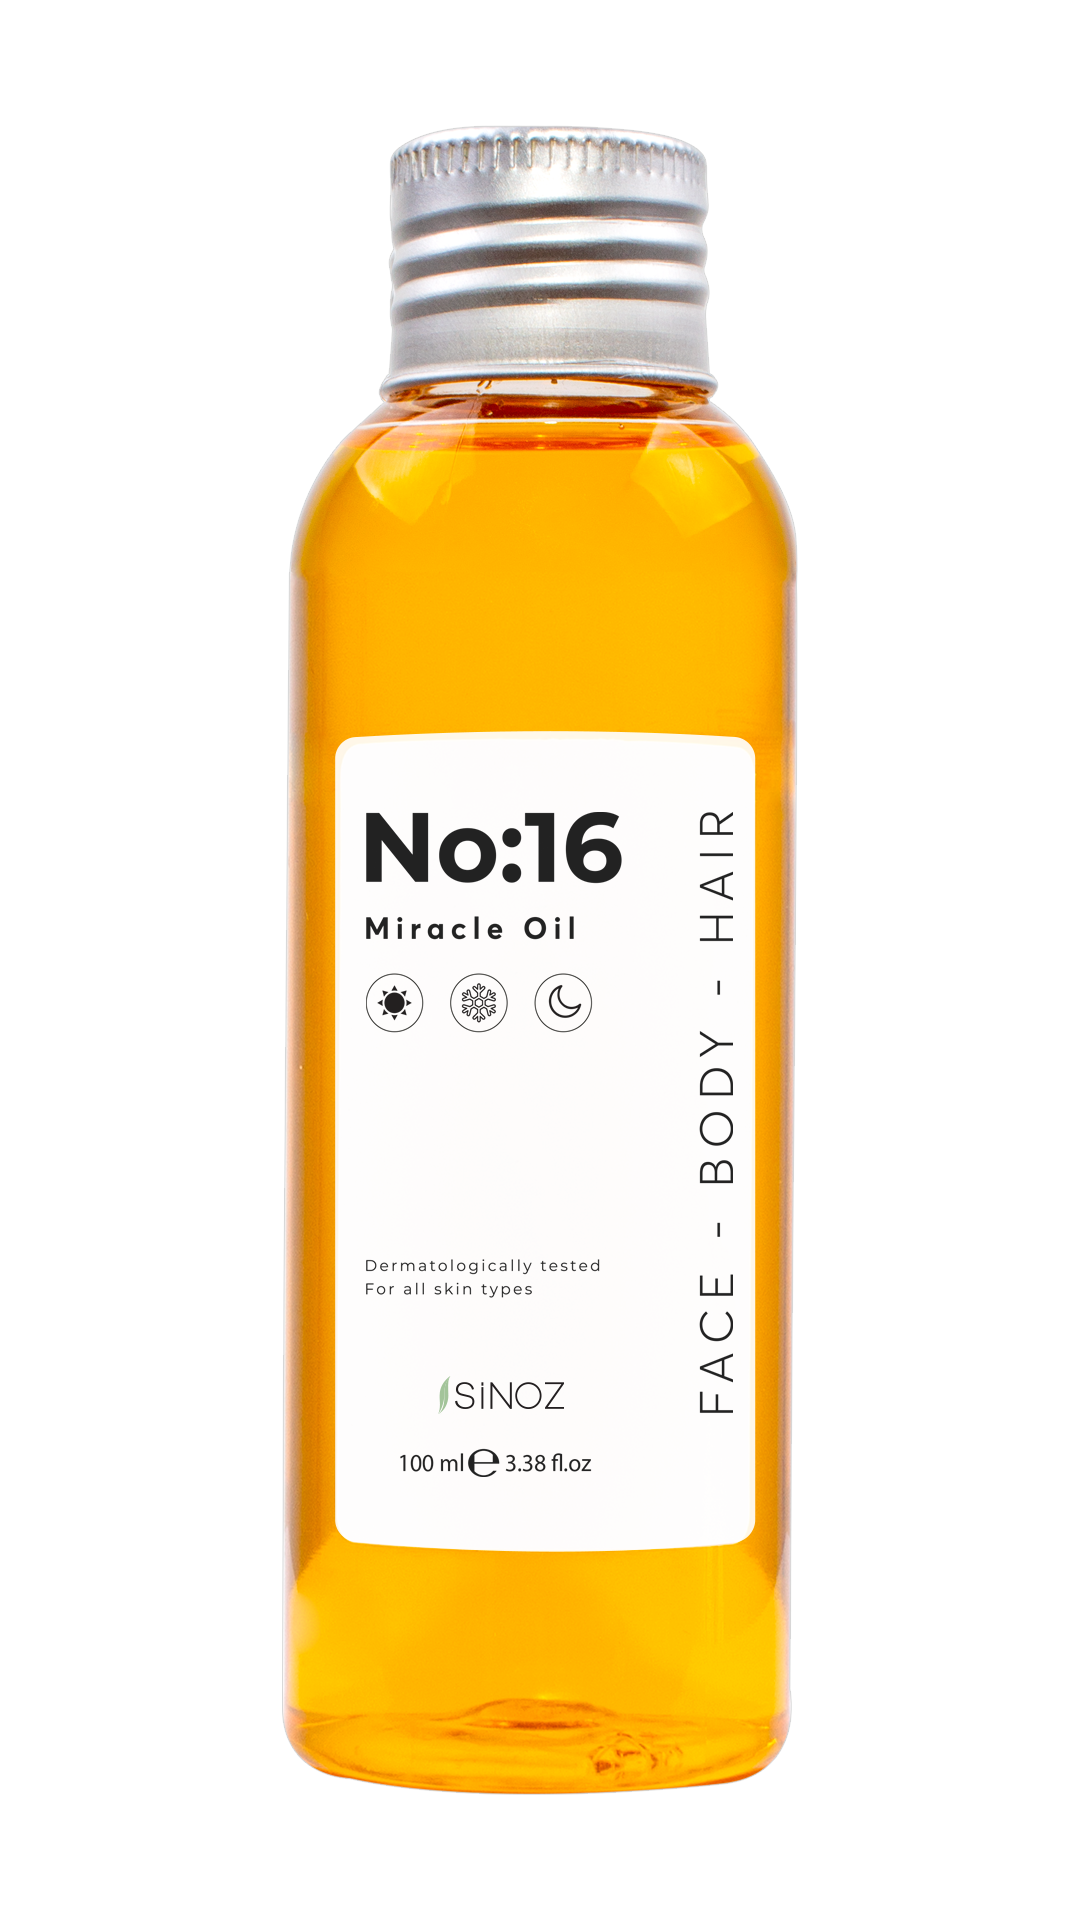 Sinoz NO: 16 Miracle Oil (Face - Body - Hair)